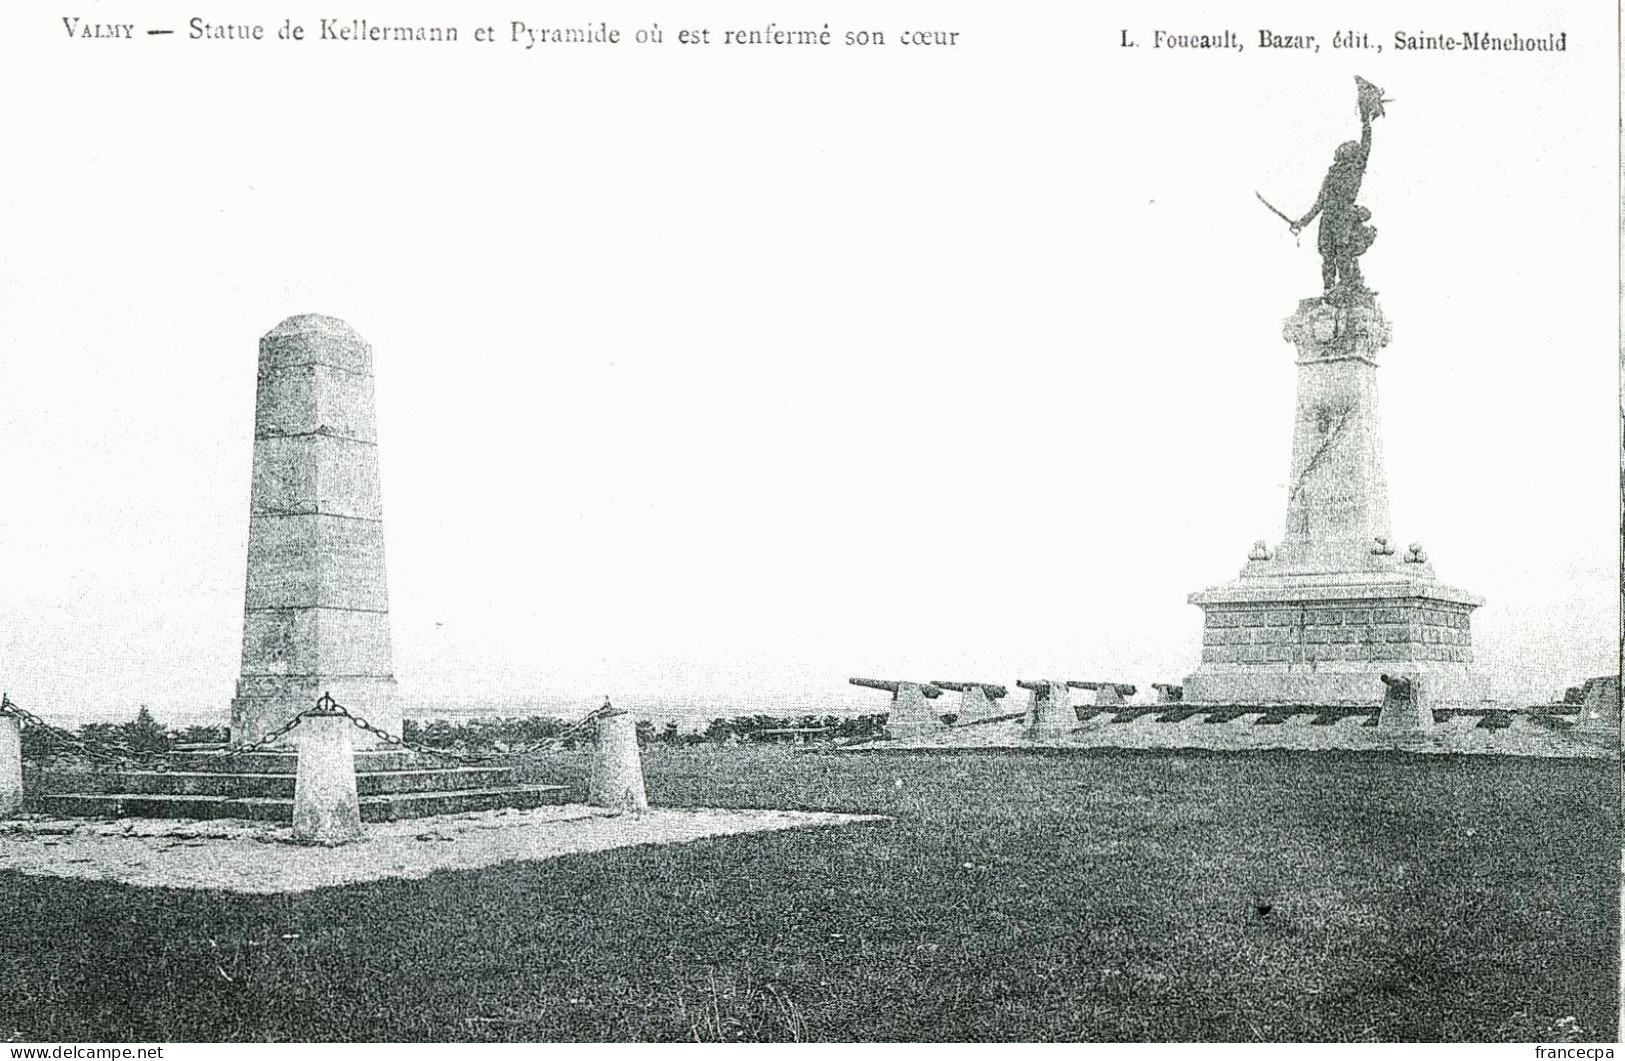 1298 - LORRAINE - VALMY - Statue De Kellermann Et Pyramide Ou Est Renfermé Son Cœur - Lorraine